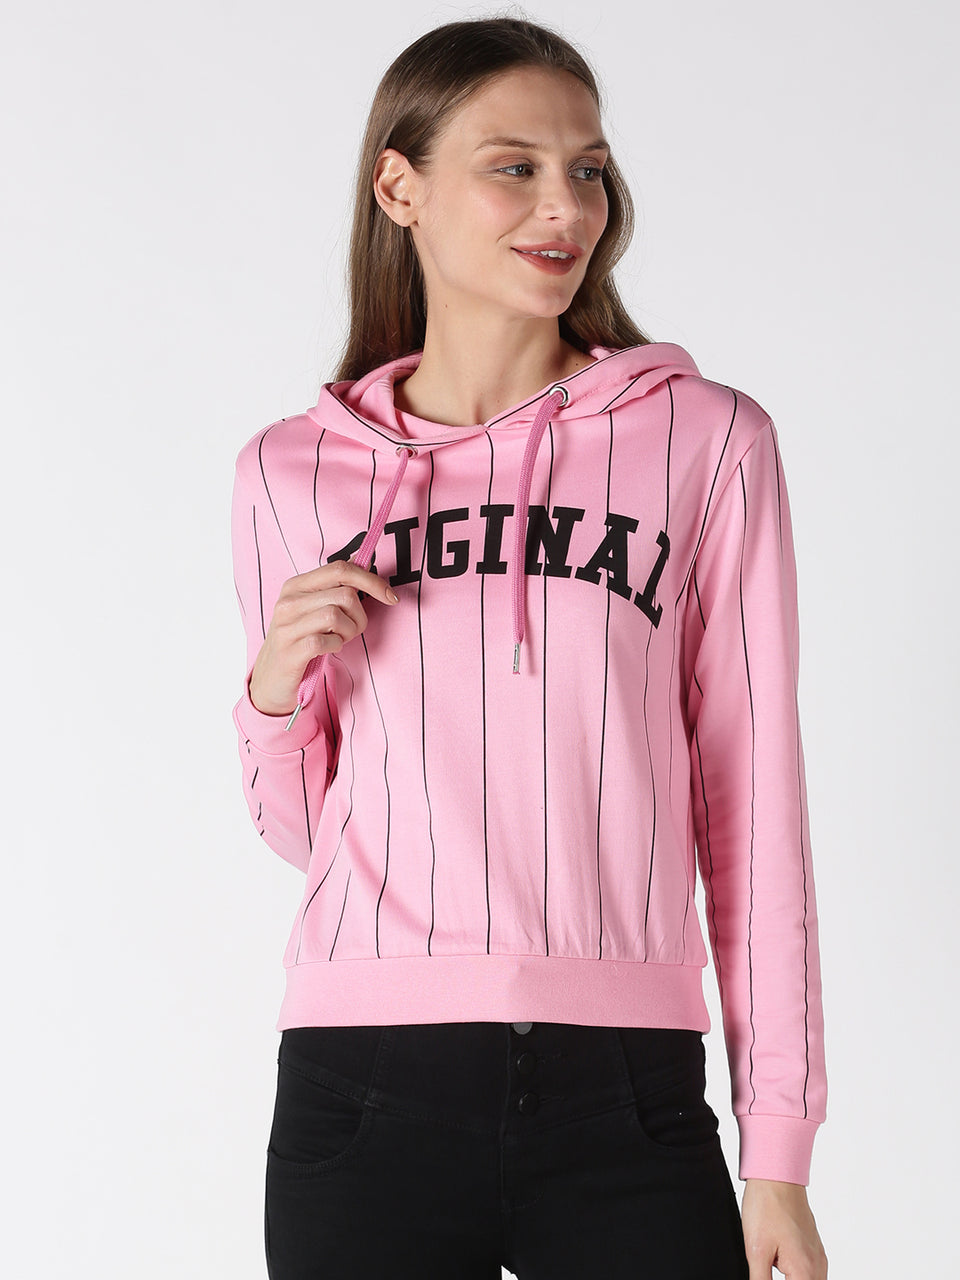 women pink printed pullover hoodie sweatshirt